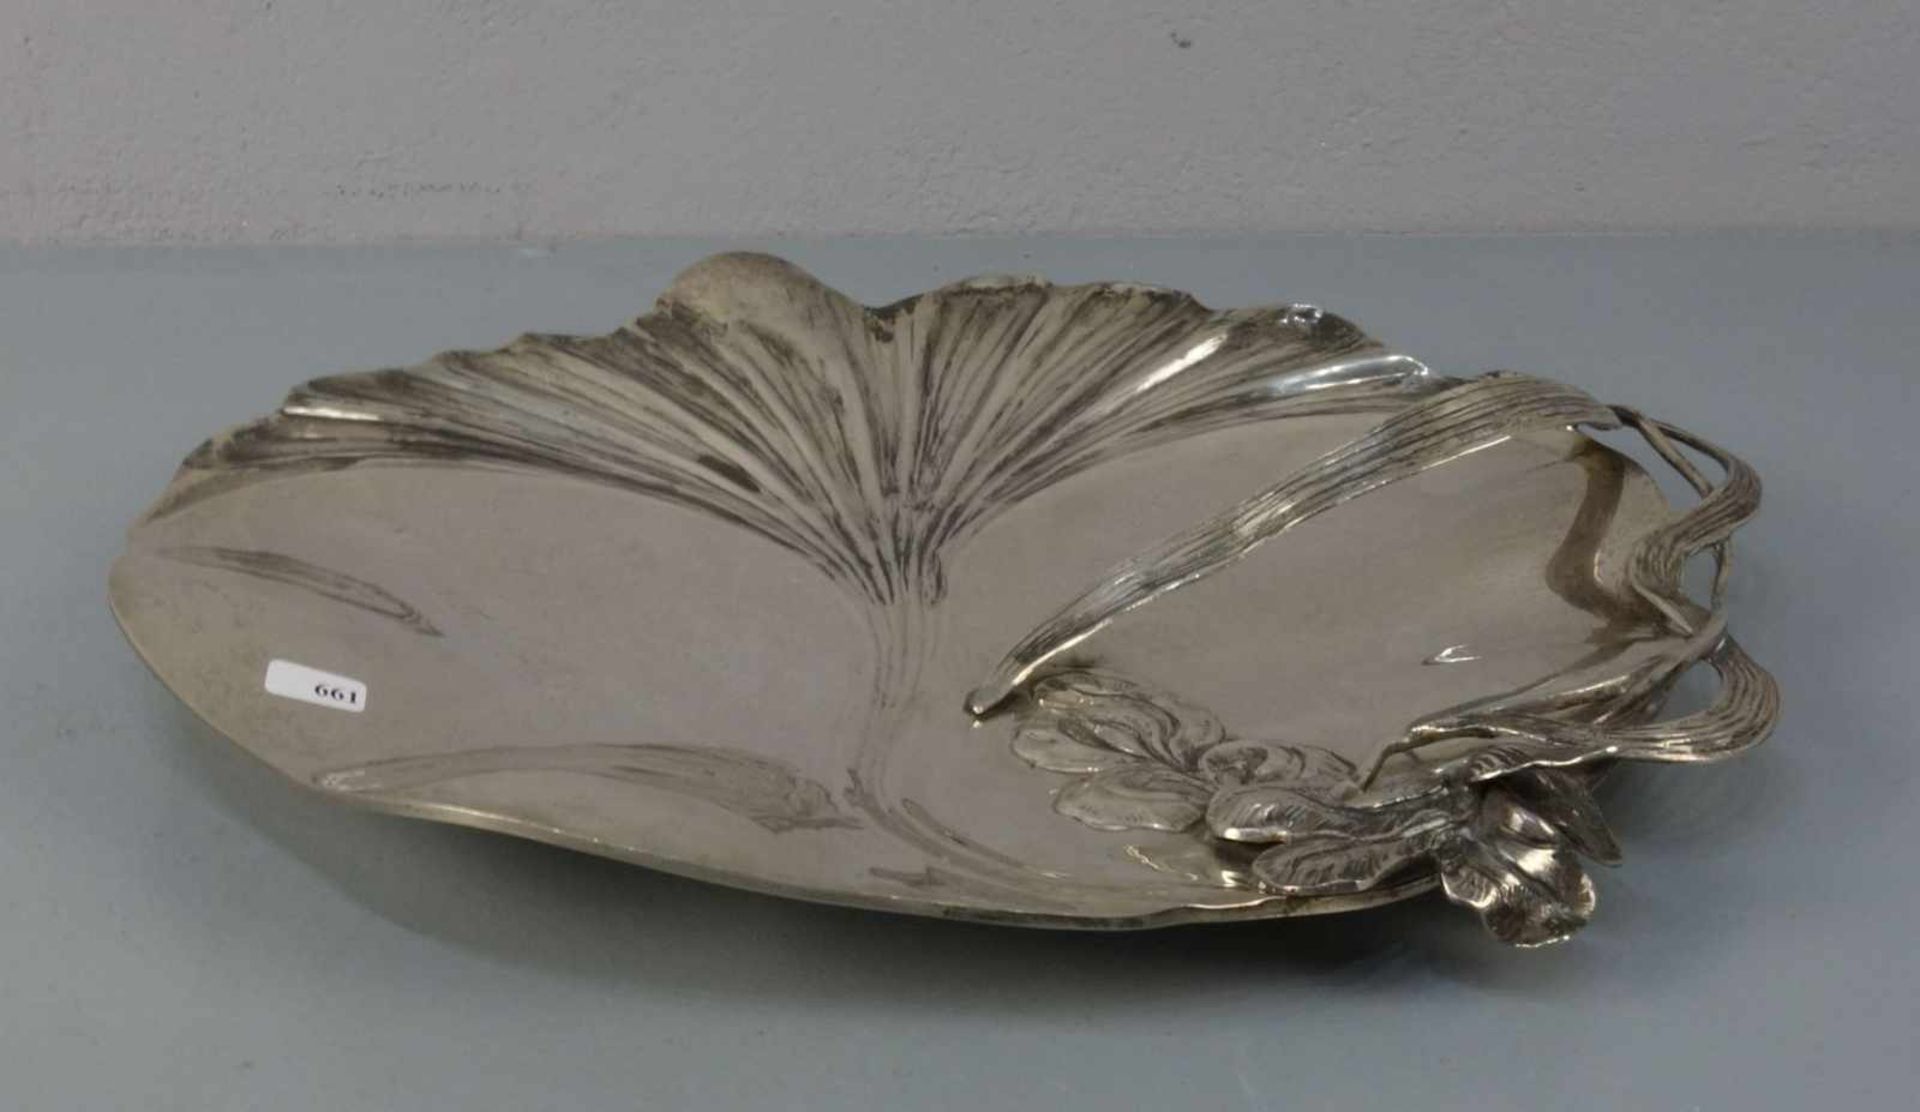 SILBERNE SCHALE MIT FLORALDEKOR im Stil des Jugendstils / silver bowl with gingko and flag lily - Bild 2 aus 3